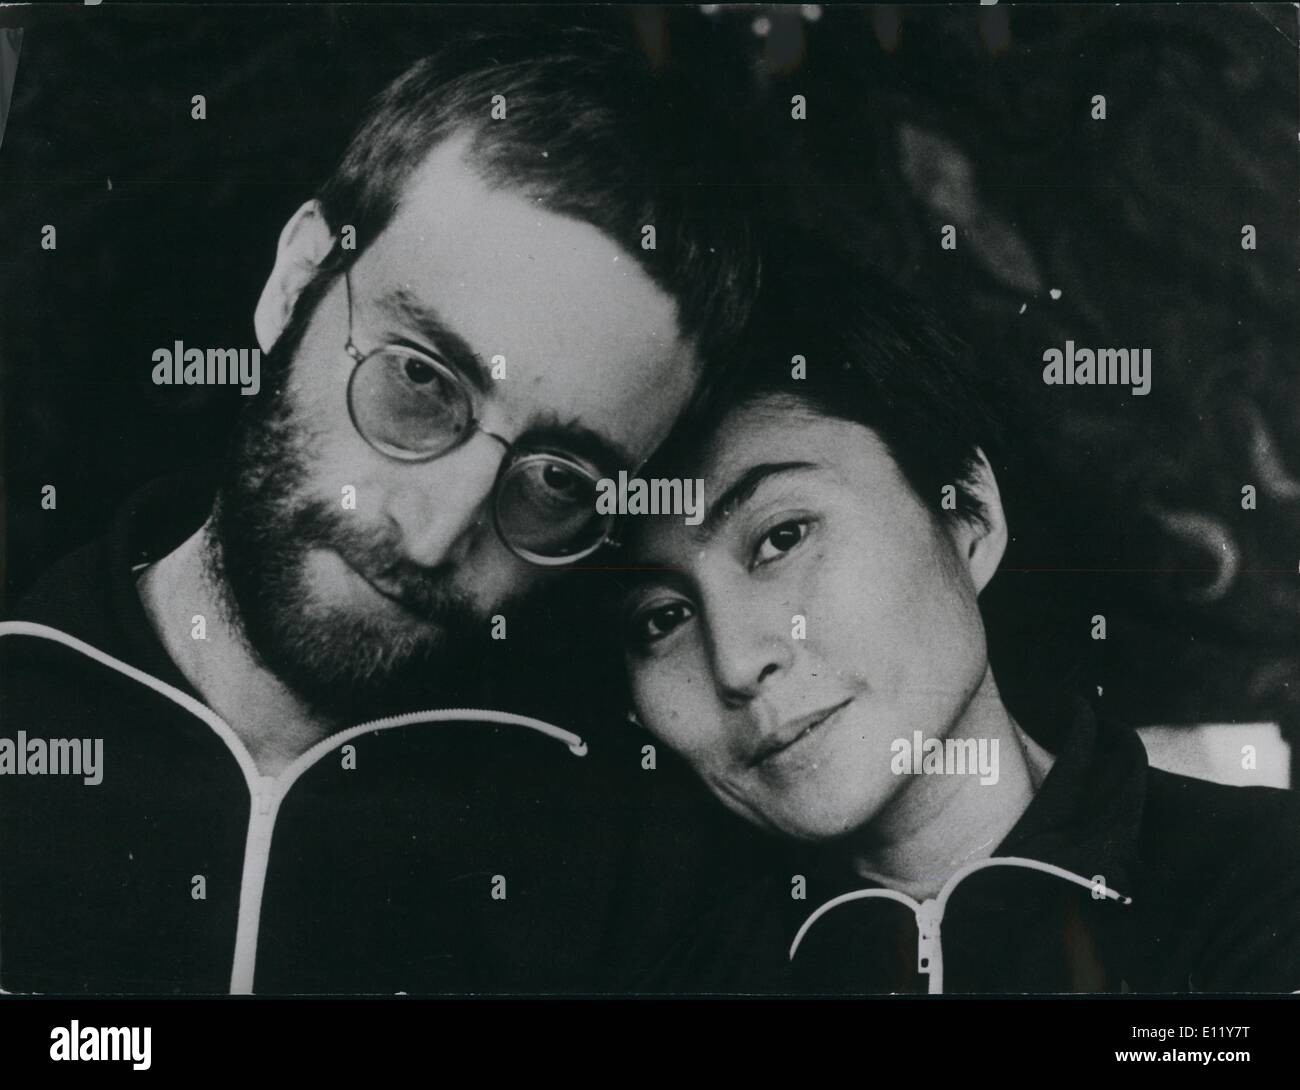 Le 12 décembre 1980 - John Lennon abattu : Formern John Lennon était abattu cinq fois à son appartement à New York hier soir et était mort à son arrivée à l'hôpital. Photo montre John Lennon avec sa femme Yoko Ono sur la photo en 1970. C'était la première fois que le Ex-Beatle avait été photographié avec les cheveux courts depuis son ''hippy days'' La photo a été prise par Anthony Cox, ex-mari de Yoko Banque D'Images